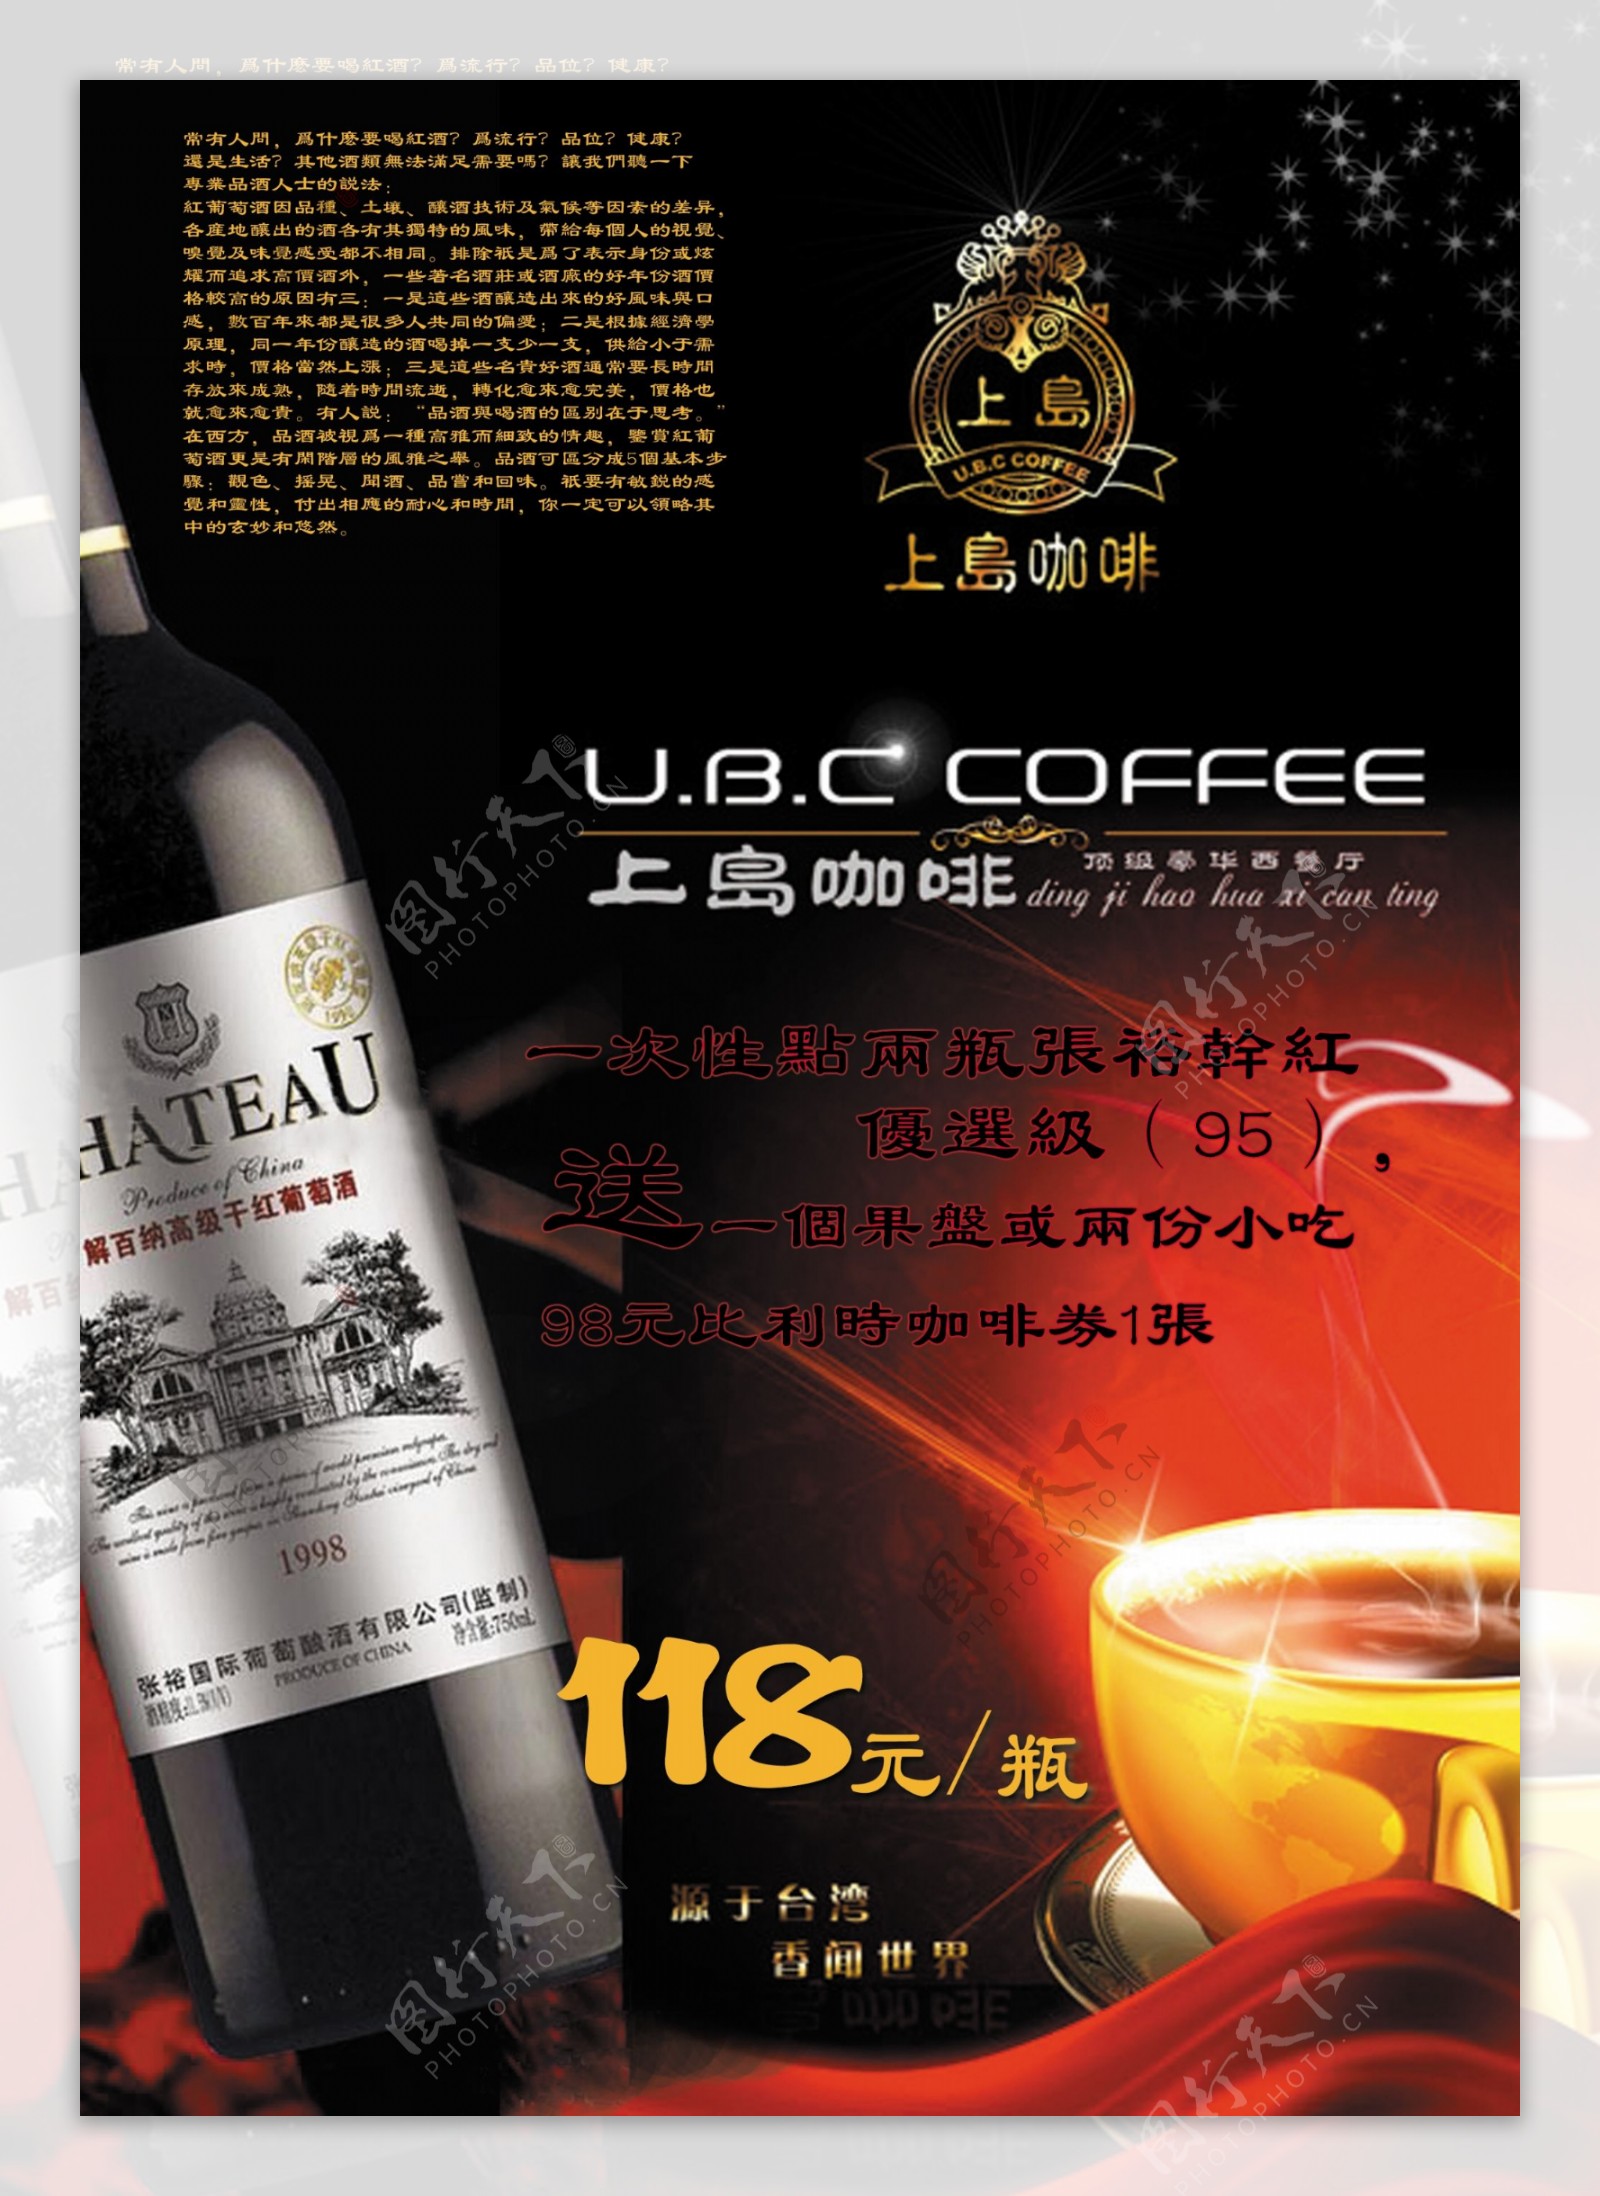 上岛咖啡宣传海报图片